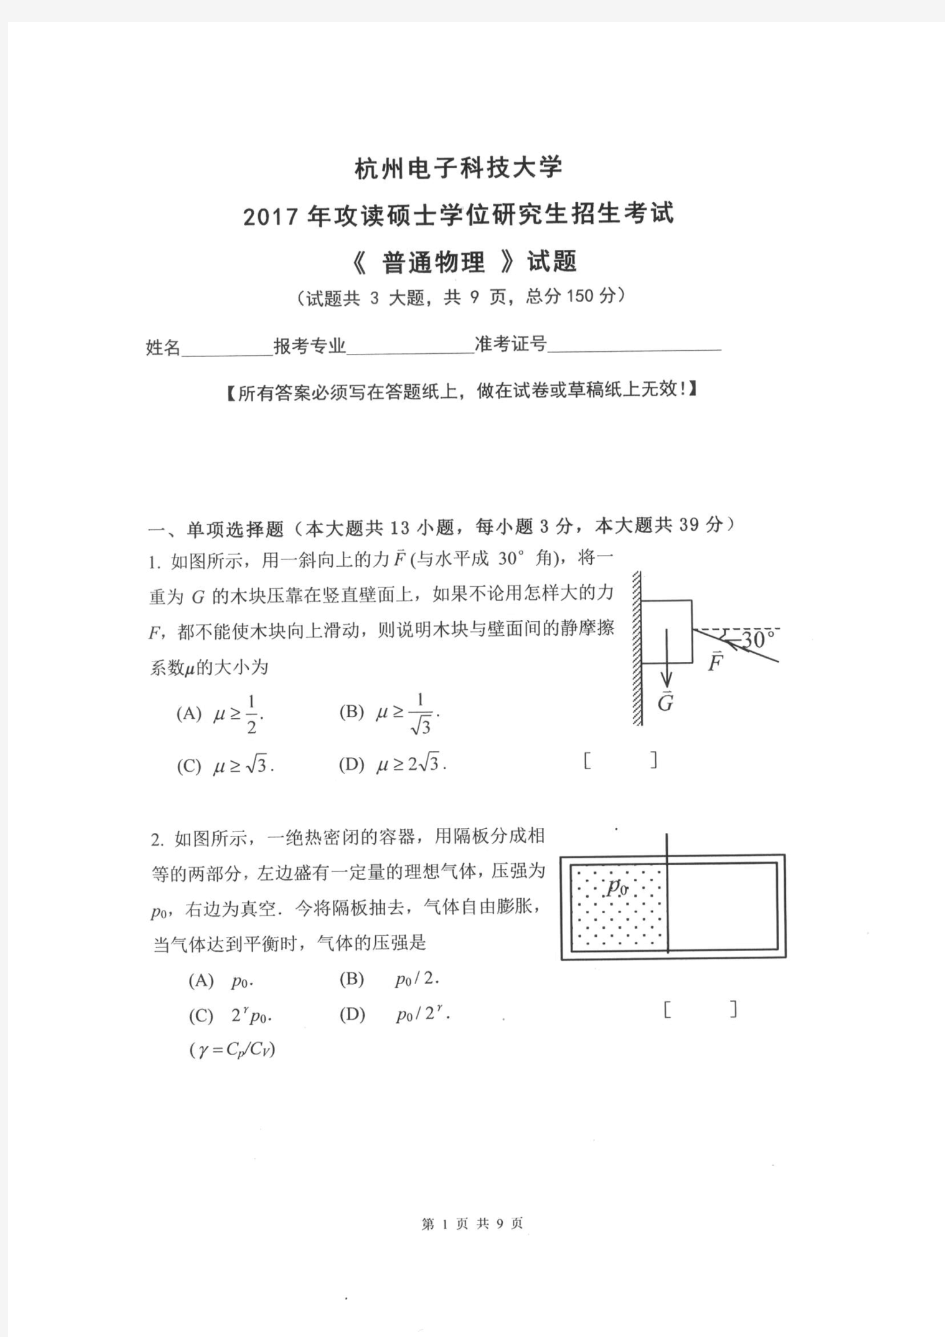 杭州电子科技大学2017年《883普通物理》考研专业课真题试卷